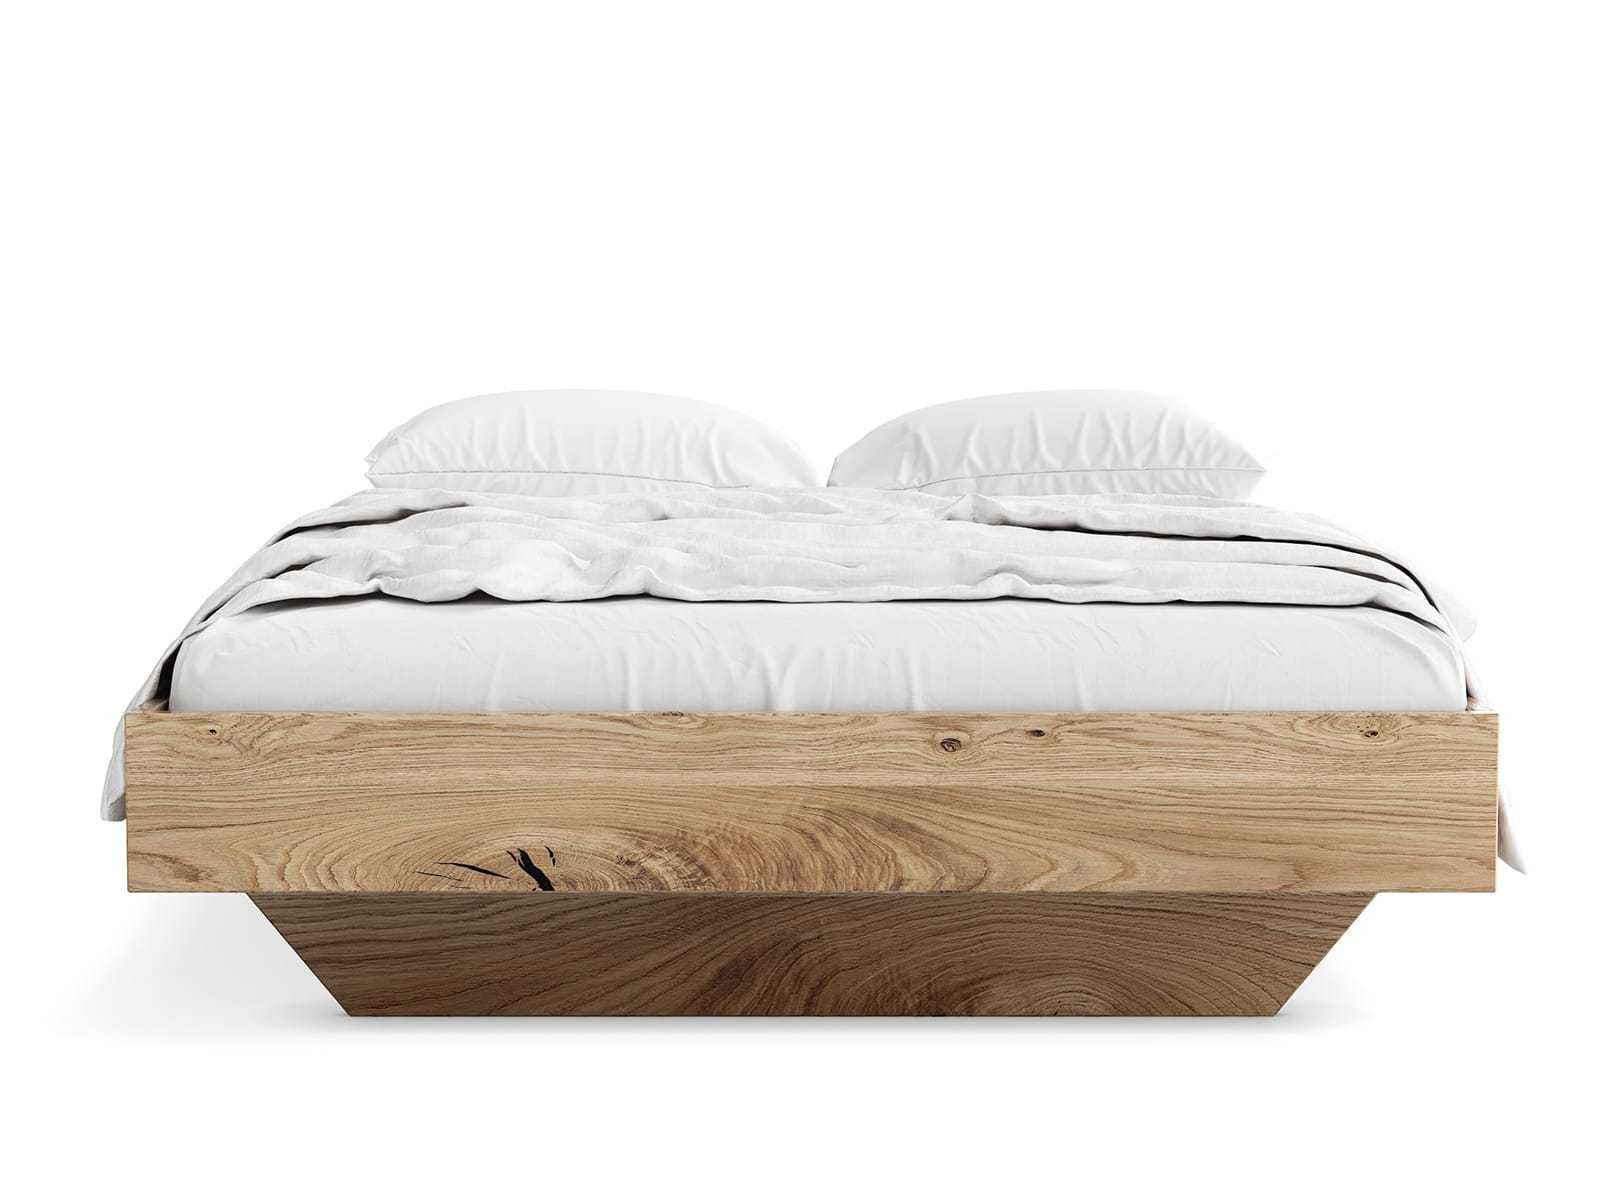 Łóżko drewniane Dębowe 180x200cm Lewitujące Bergamo, różne wymiary